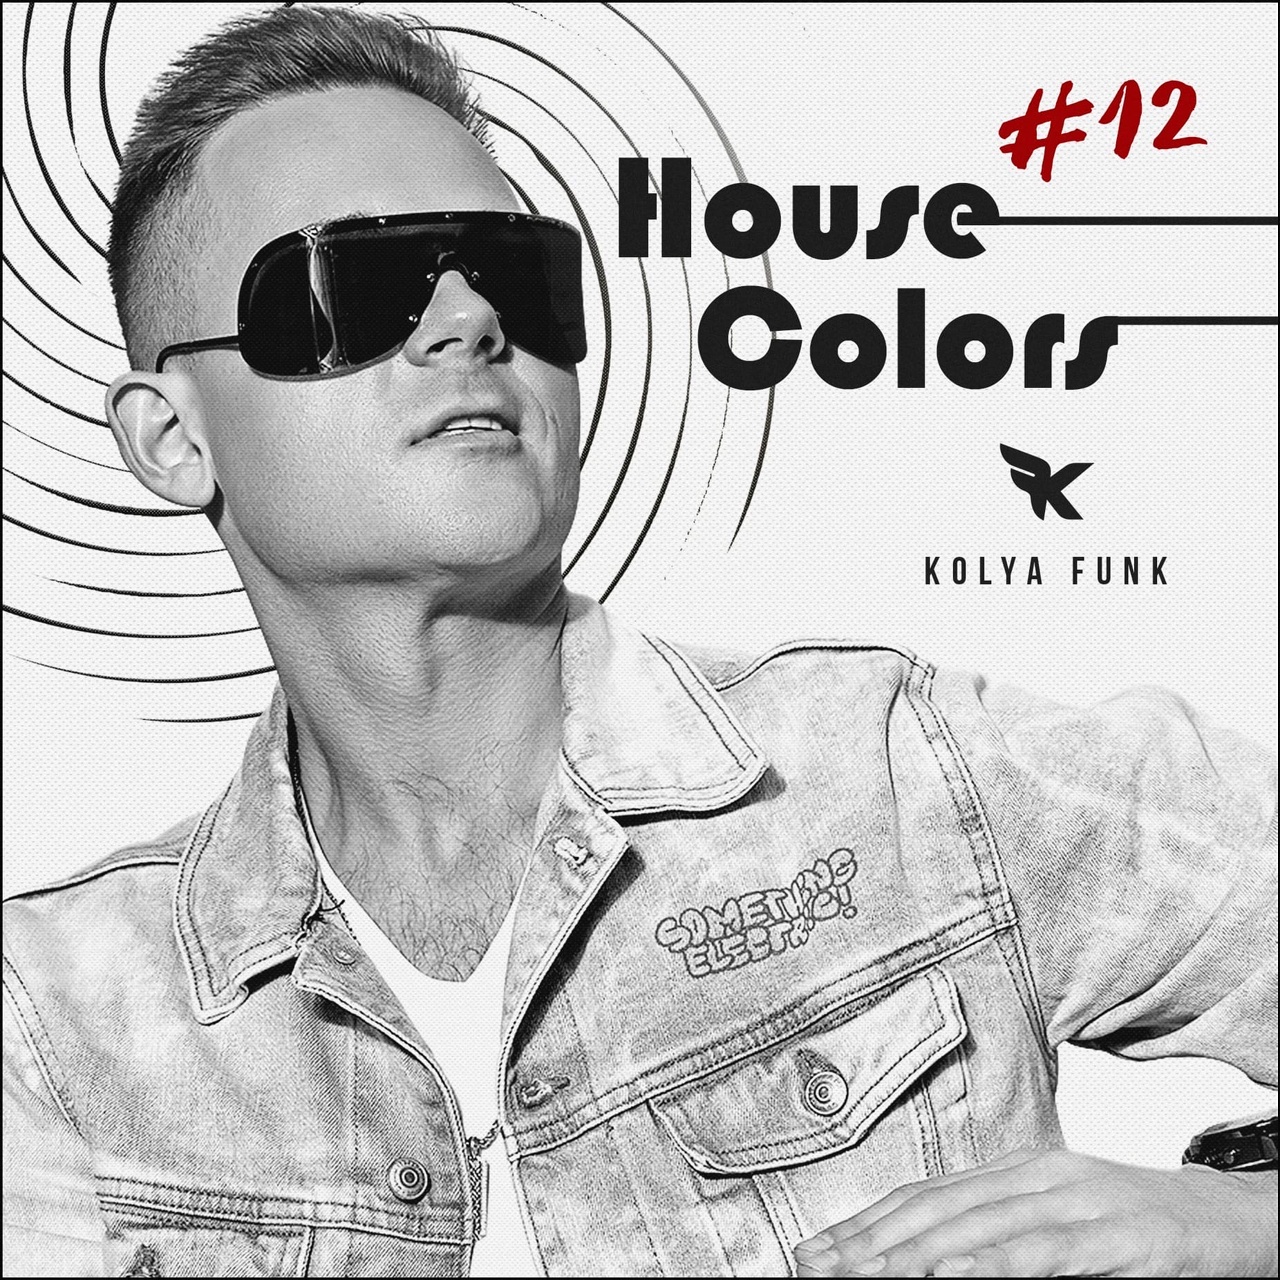 Sii mai Kolya Funk - House Colors #012